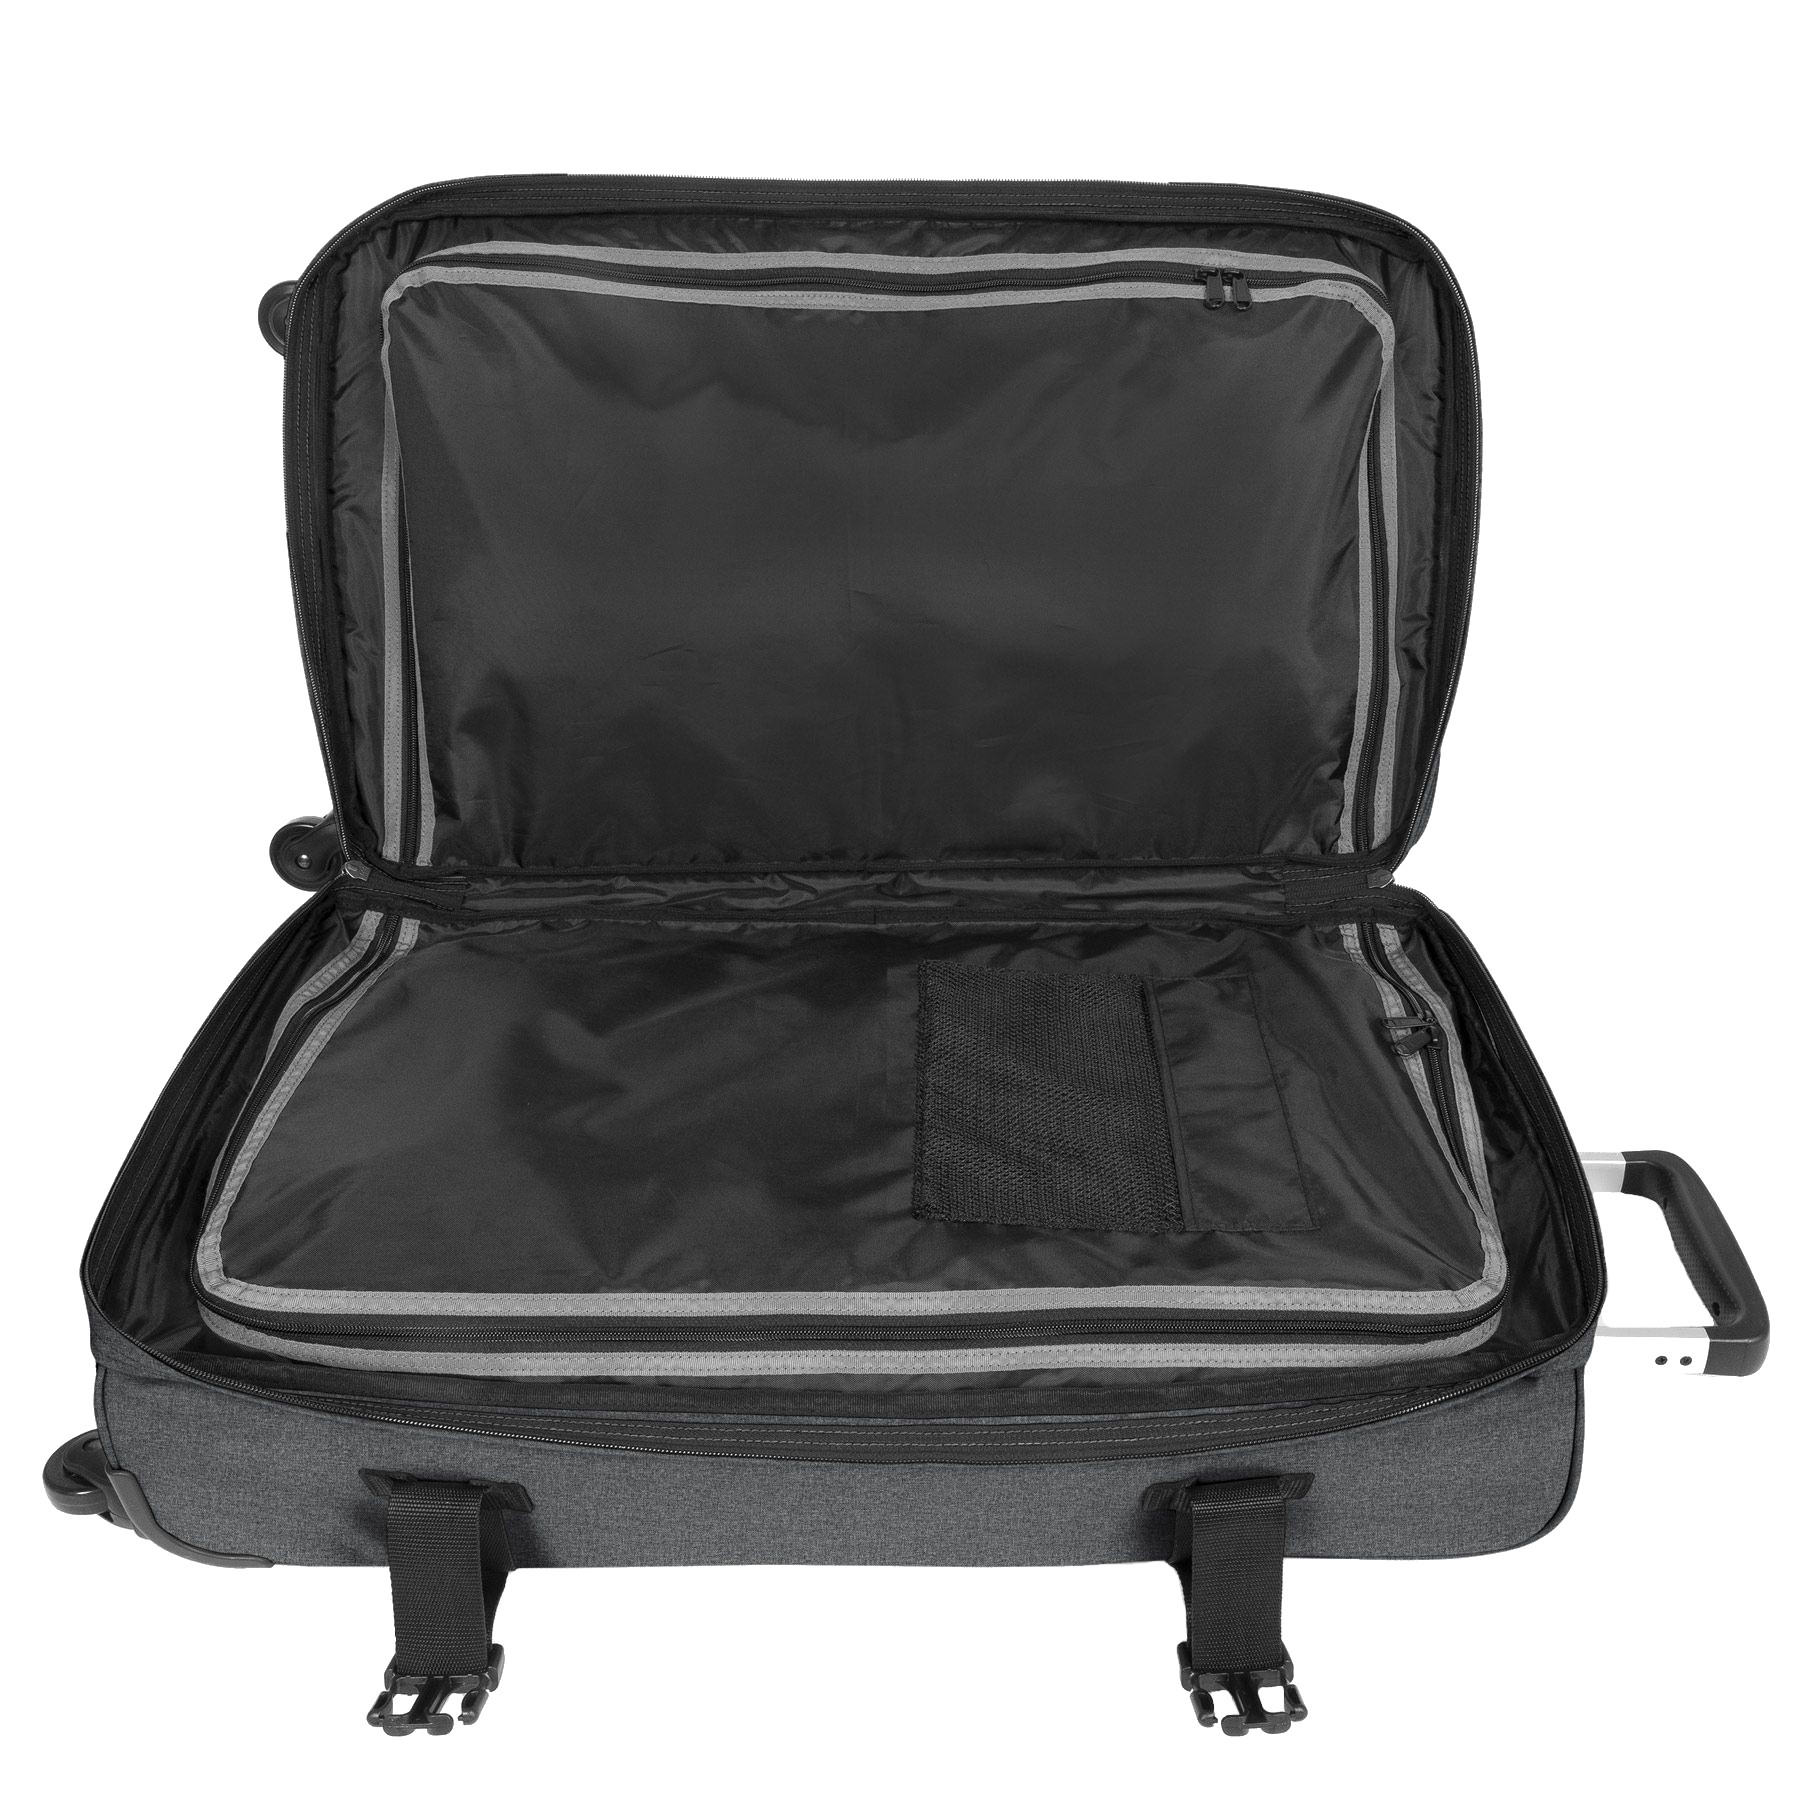 Eastpak Transit'r 4 XL 110 Litre Four Wheel Soft Suitcase